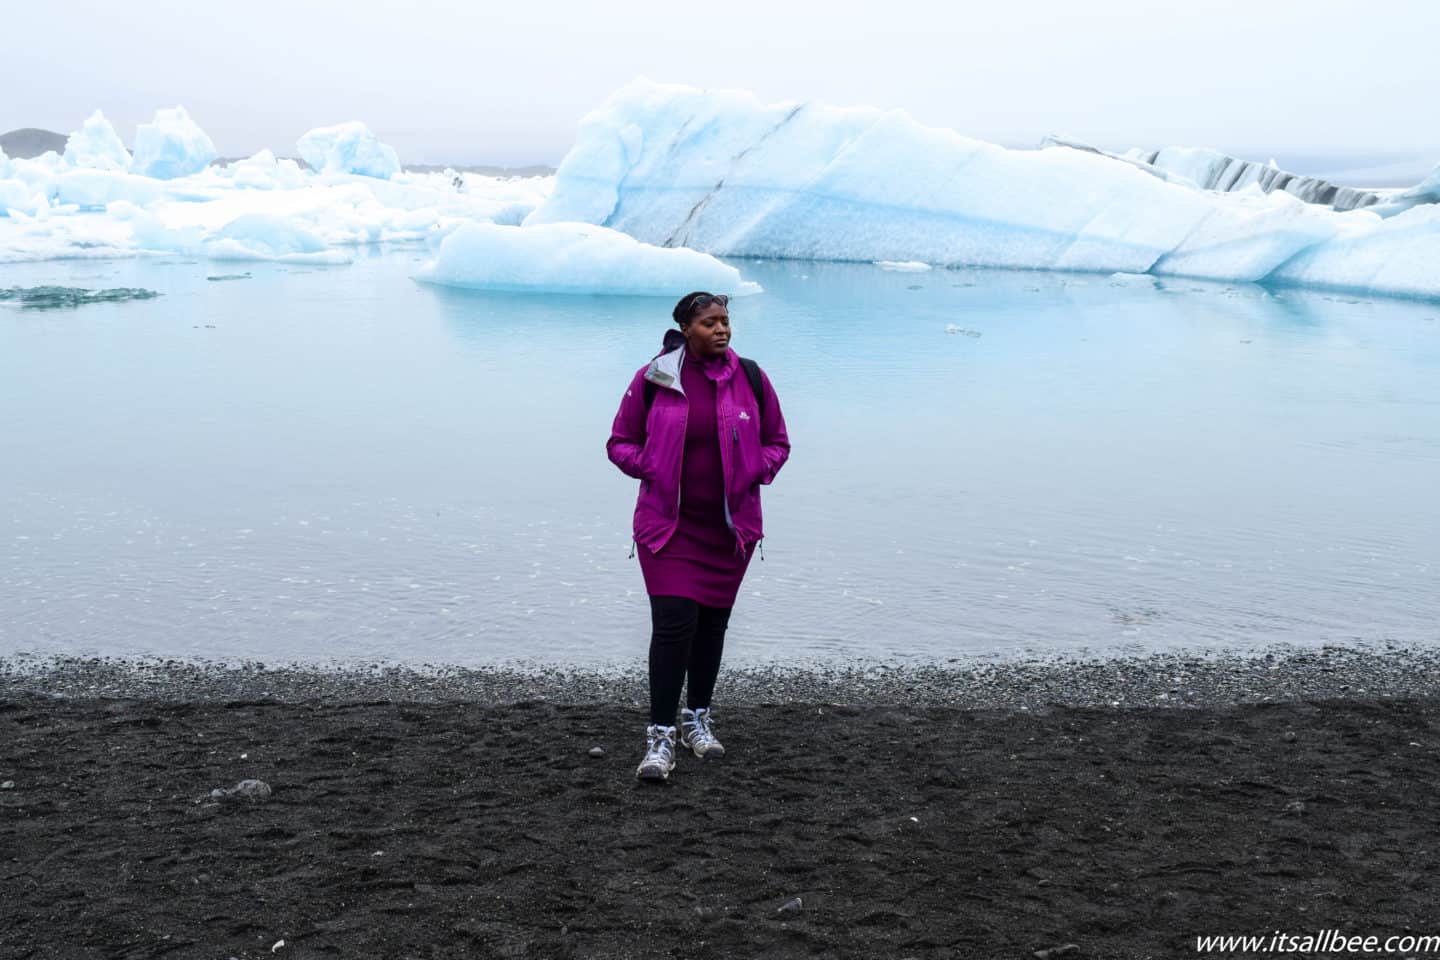 Iceland Essentials - De bästa vandringskängorna för Island - Tips för de bästa skorna för Island, bra stövlar för Island på vintern och sommaren. Vandringsskor, snökängor och mycket mer. Allt du behöver veta om skor att packa för Island för olika aktiviteter. #traveltips #itsallbee #trip #adventure #winter #besttimetovisit www.itsallbee.com #europe #hiking #glacier #lagoon